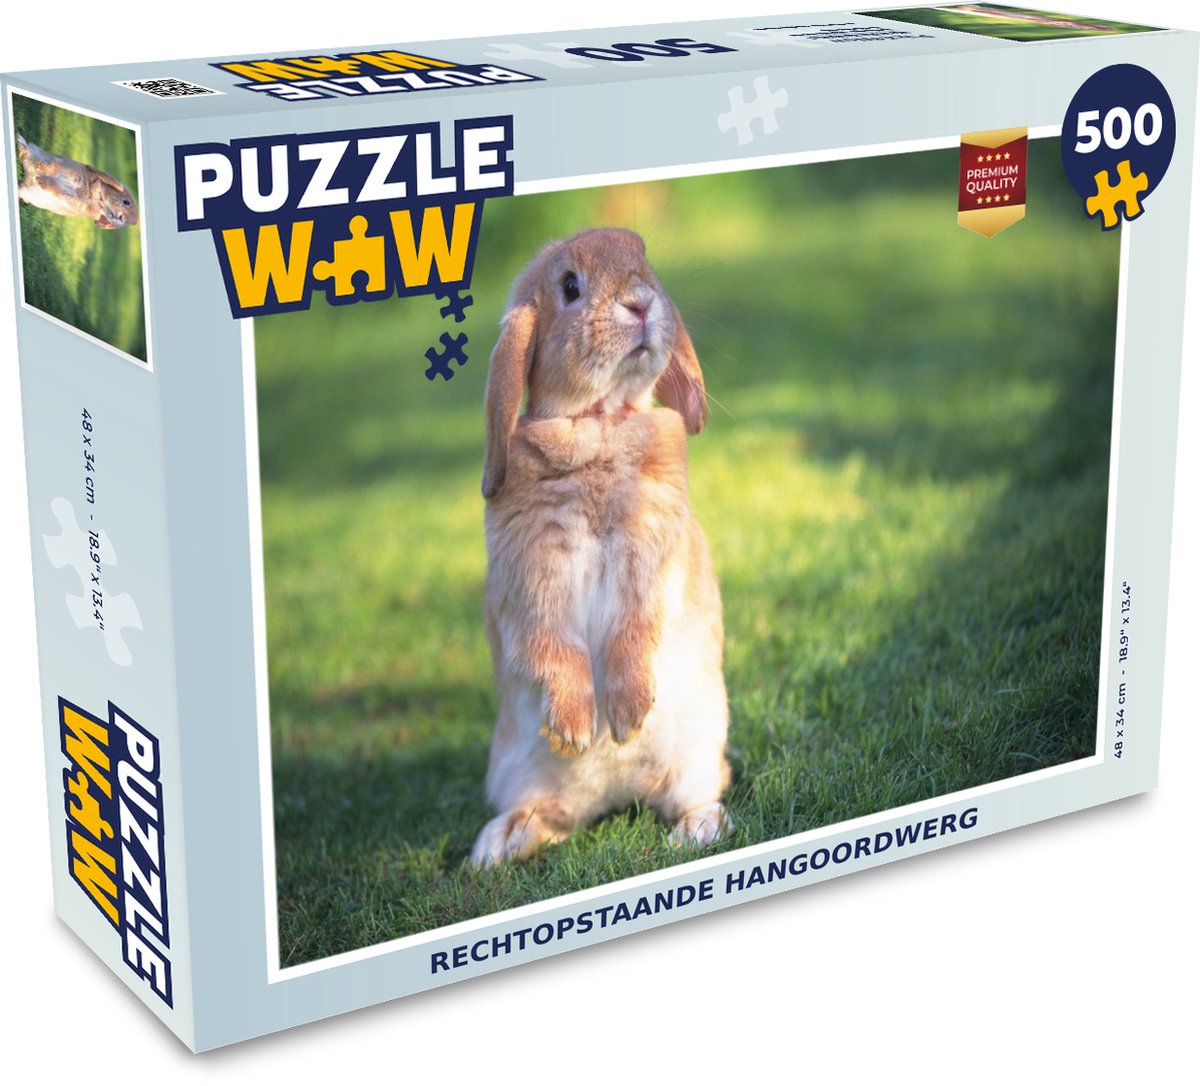 Afbeelding van product Puzzel 500 stukjes Hangoordwerg - Rechtopstaande hangoordwerg - PuzzleWow heeft +100000 puzzels